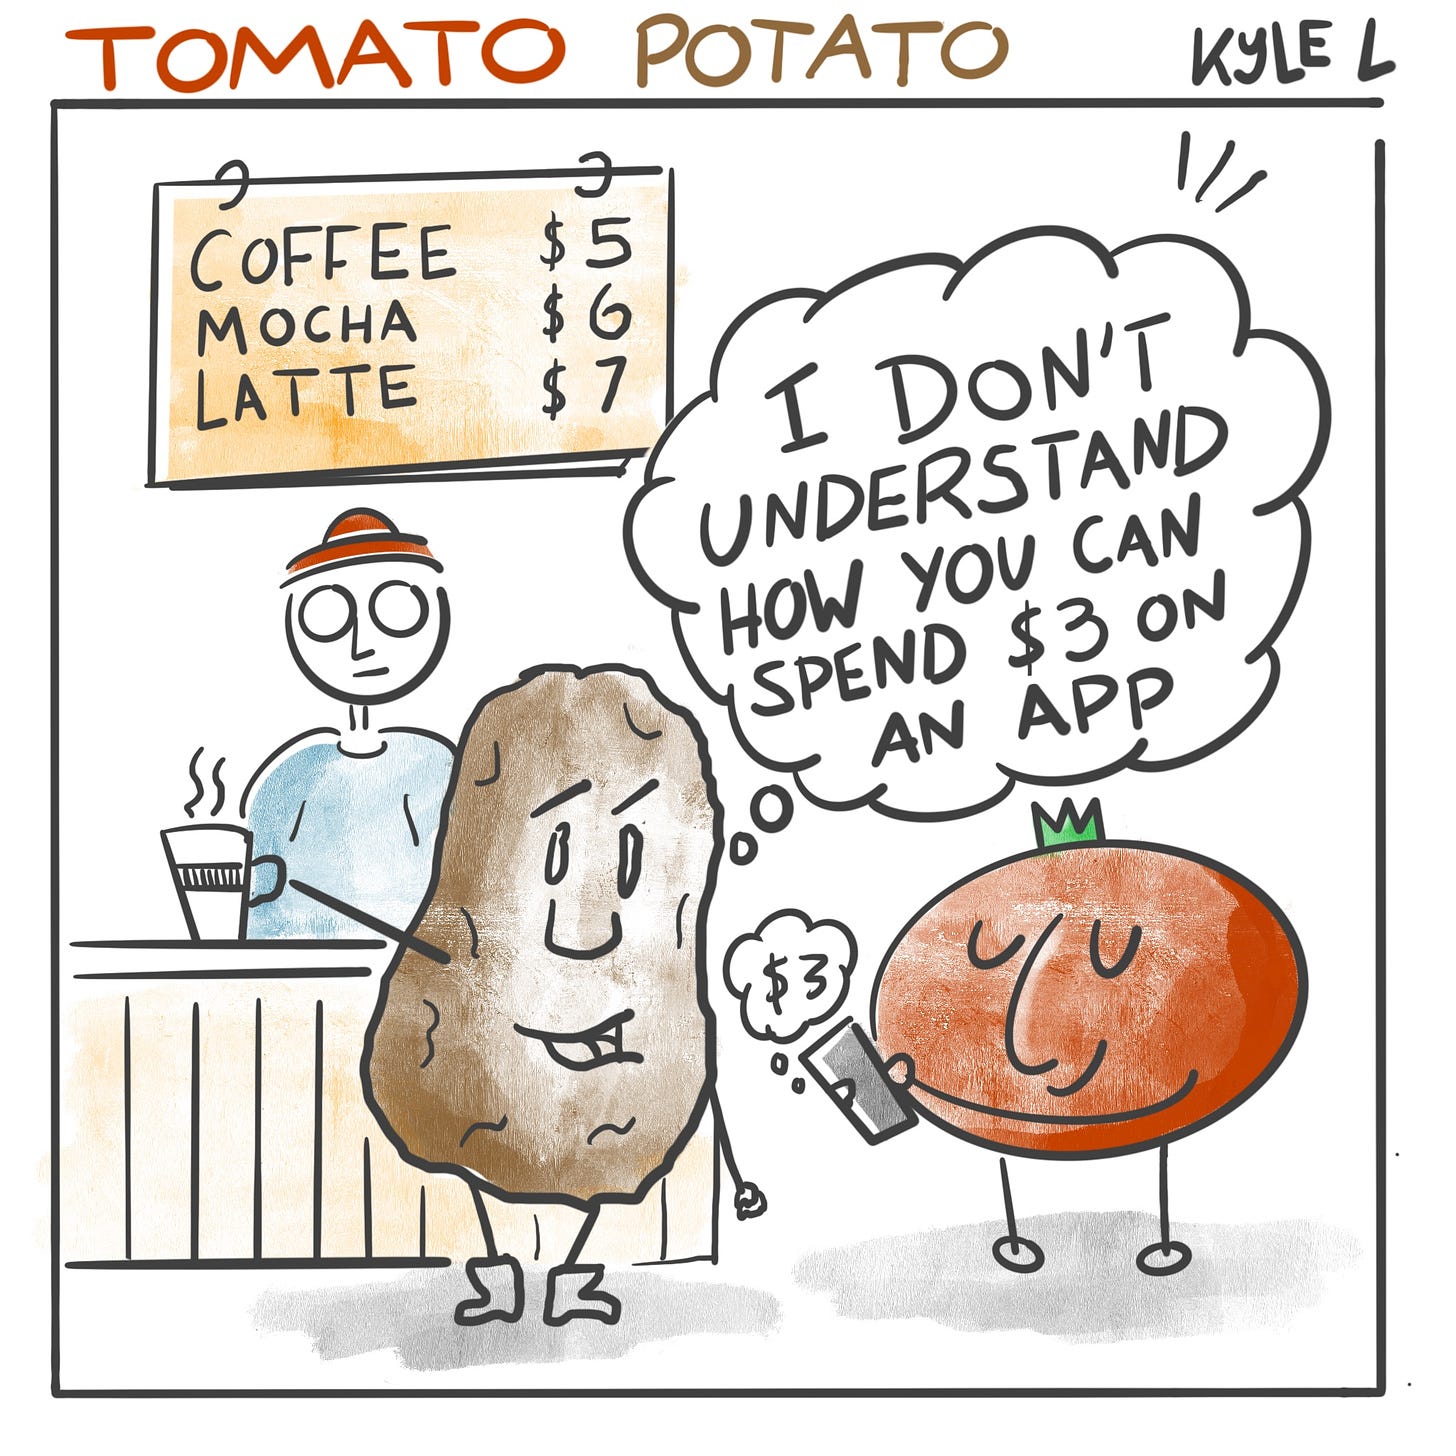 Tomato Potato comic